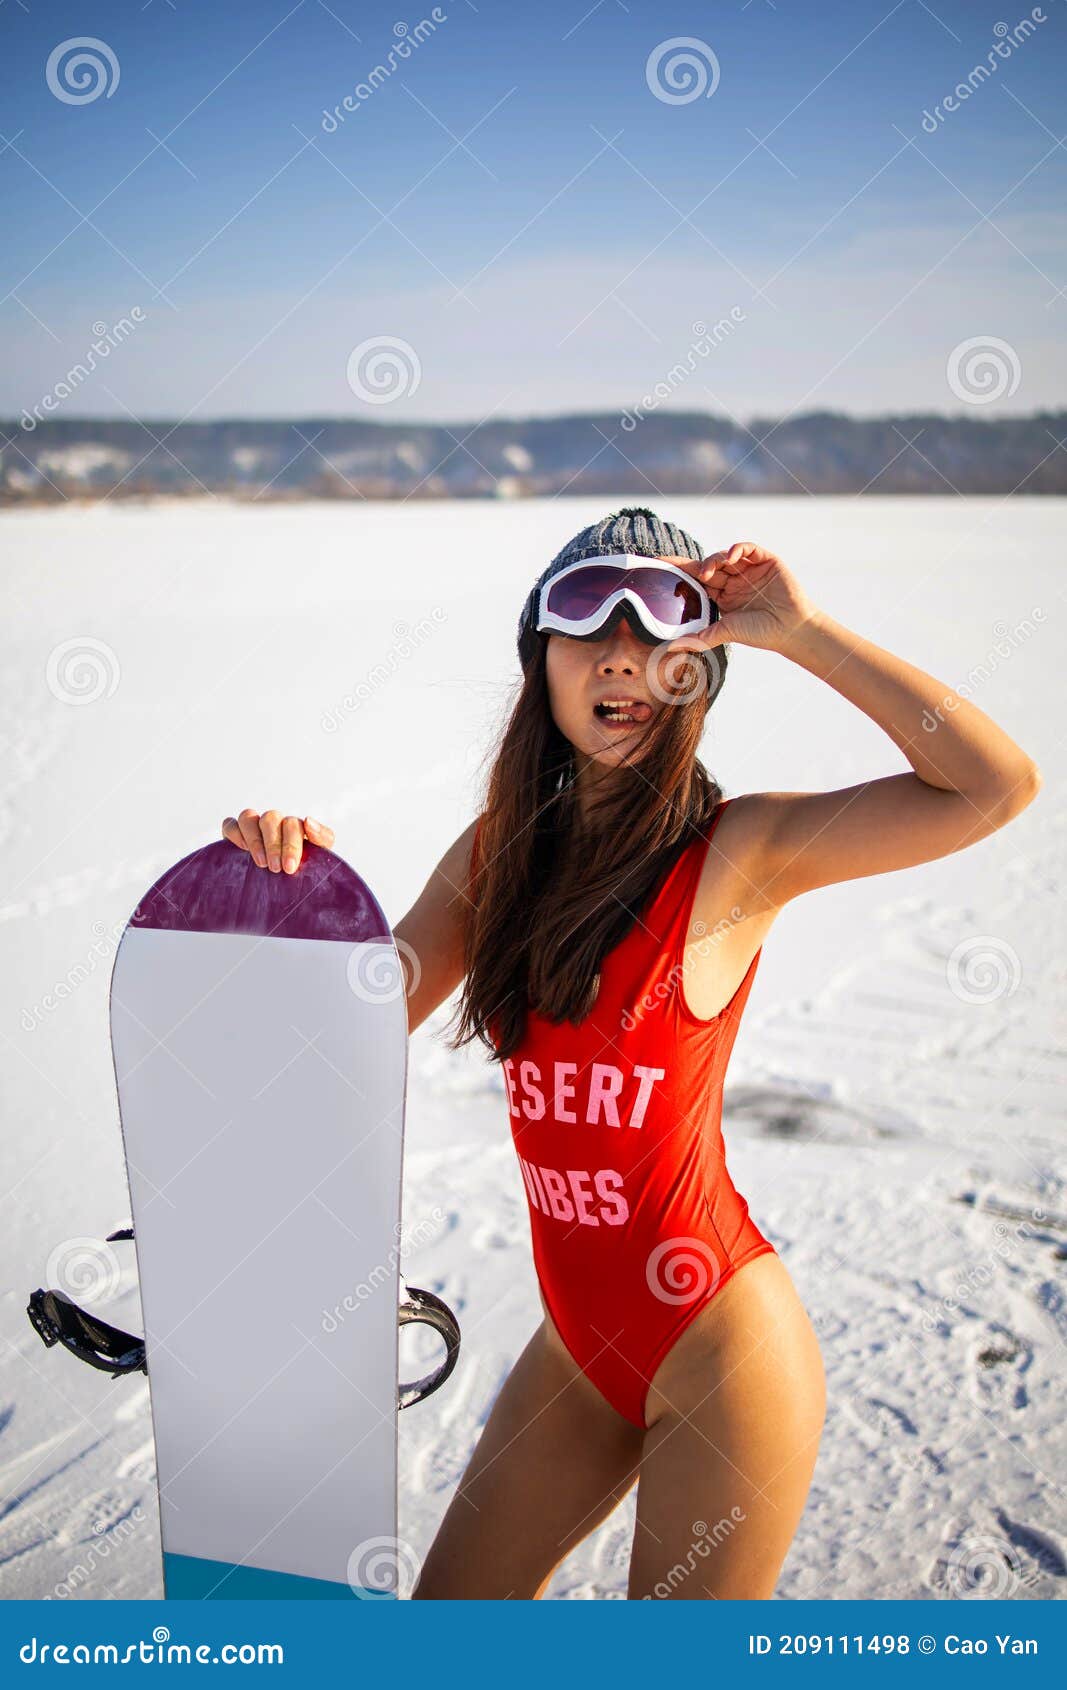 Atractiva Mujer De Fitness Con Traje De Baño Con En La Nieve de archivo - Imagen de manera: 209111498